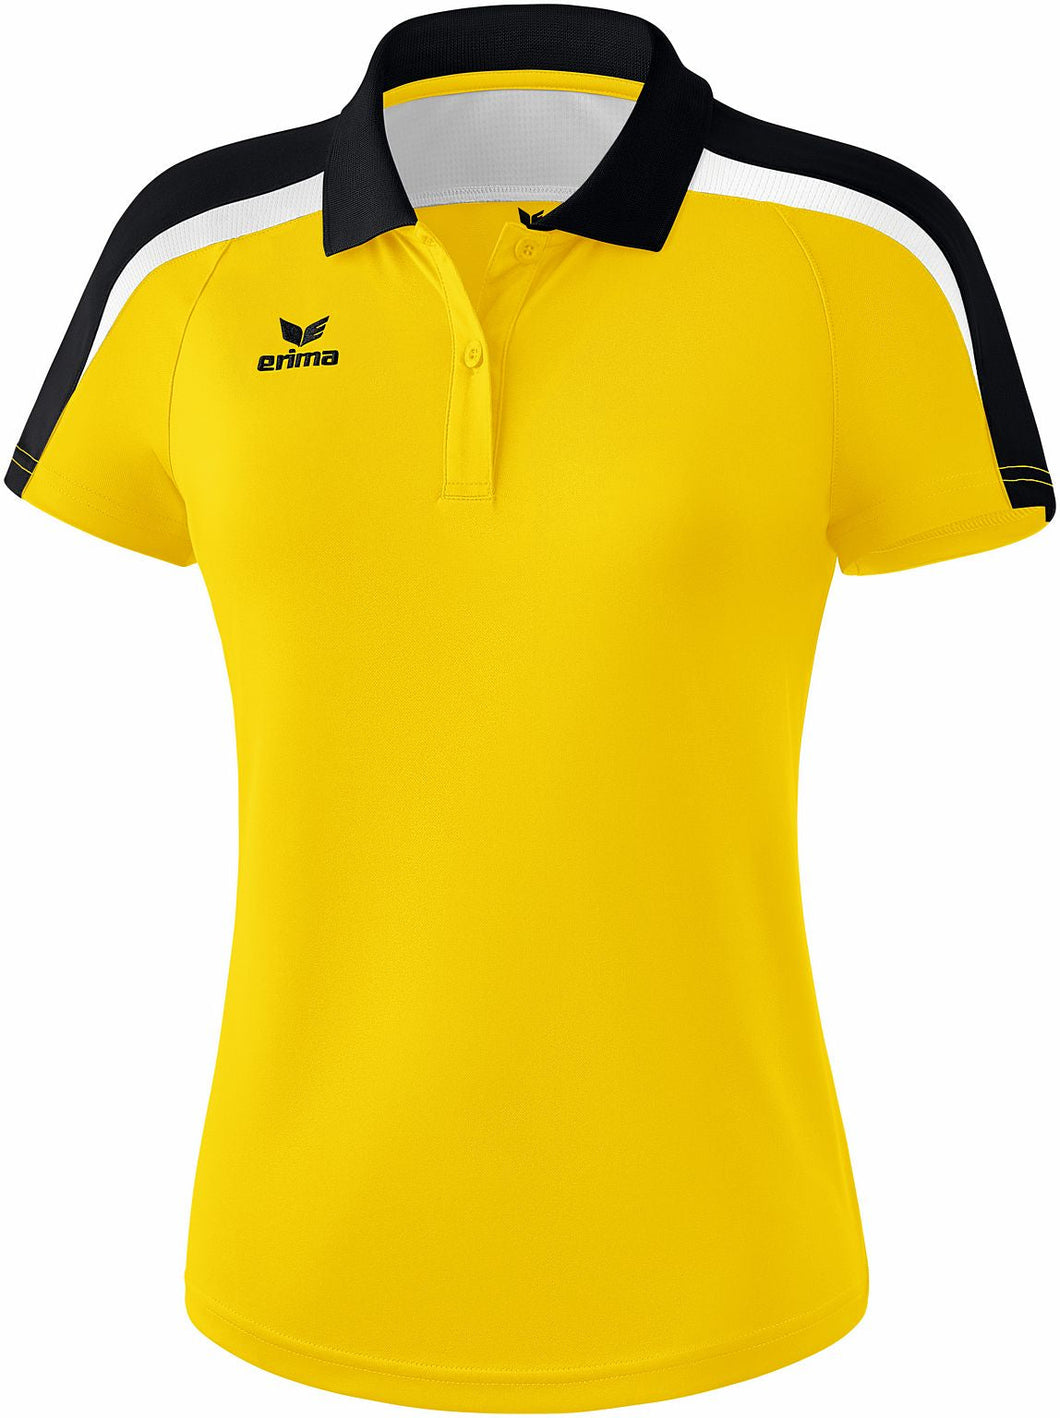 Teamline Liga 2.0 Polo-shirt figursyet damemodel